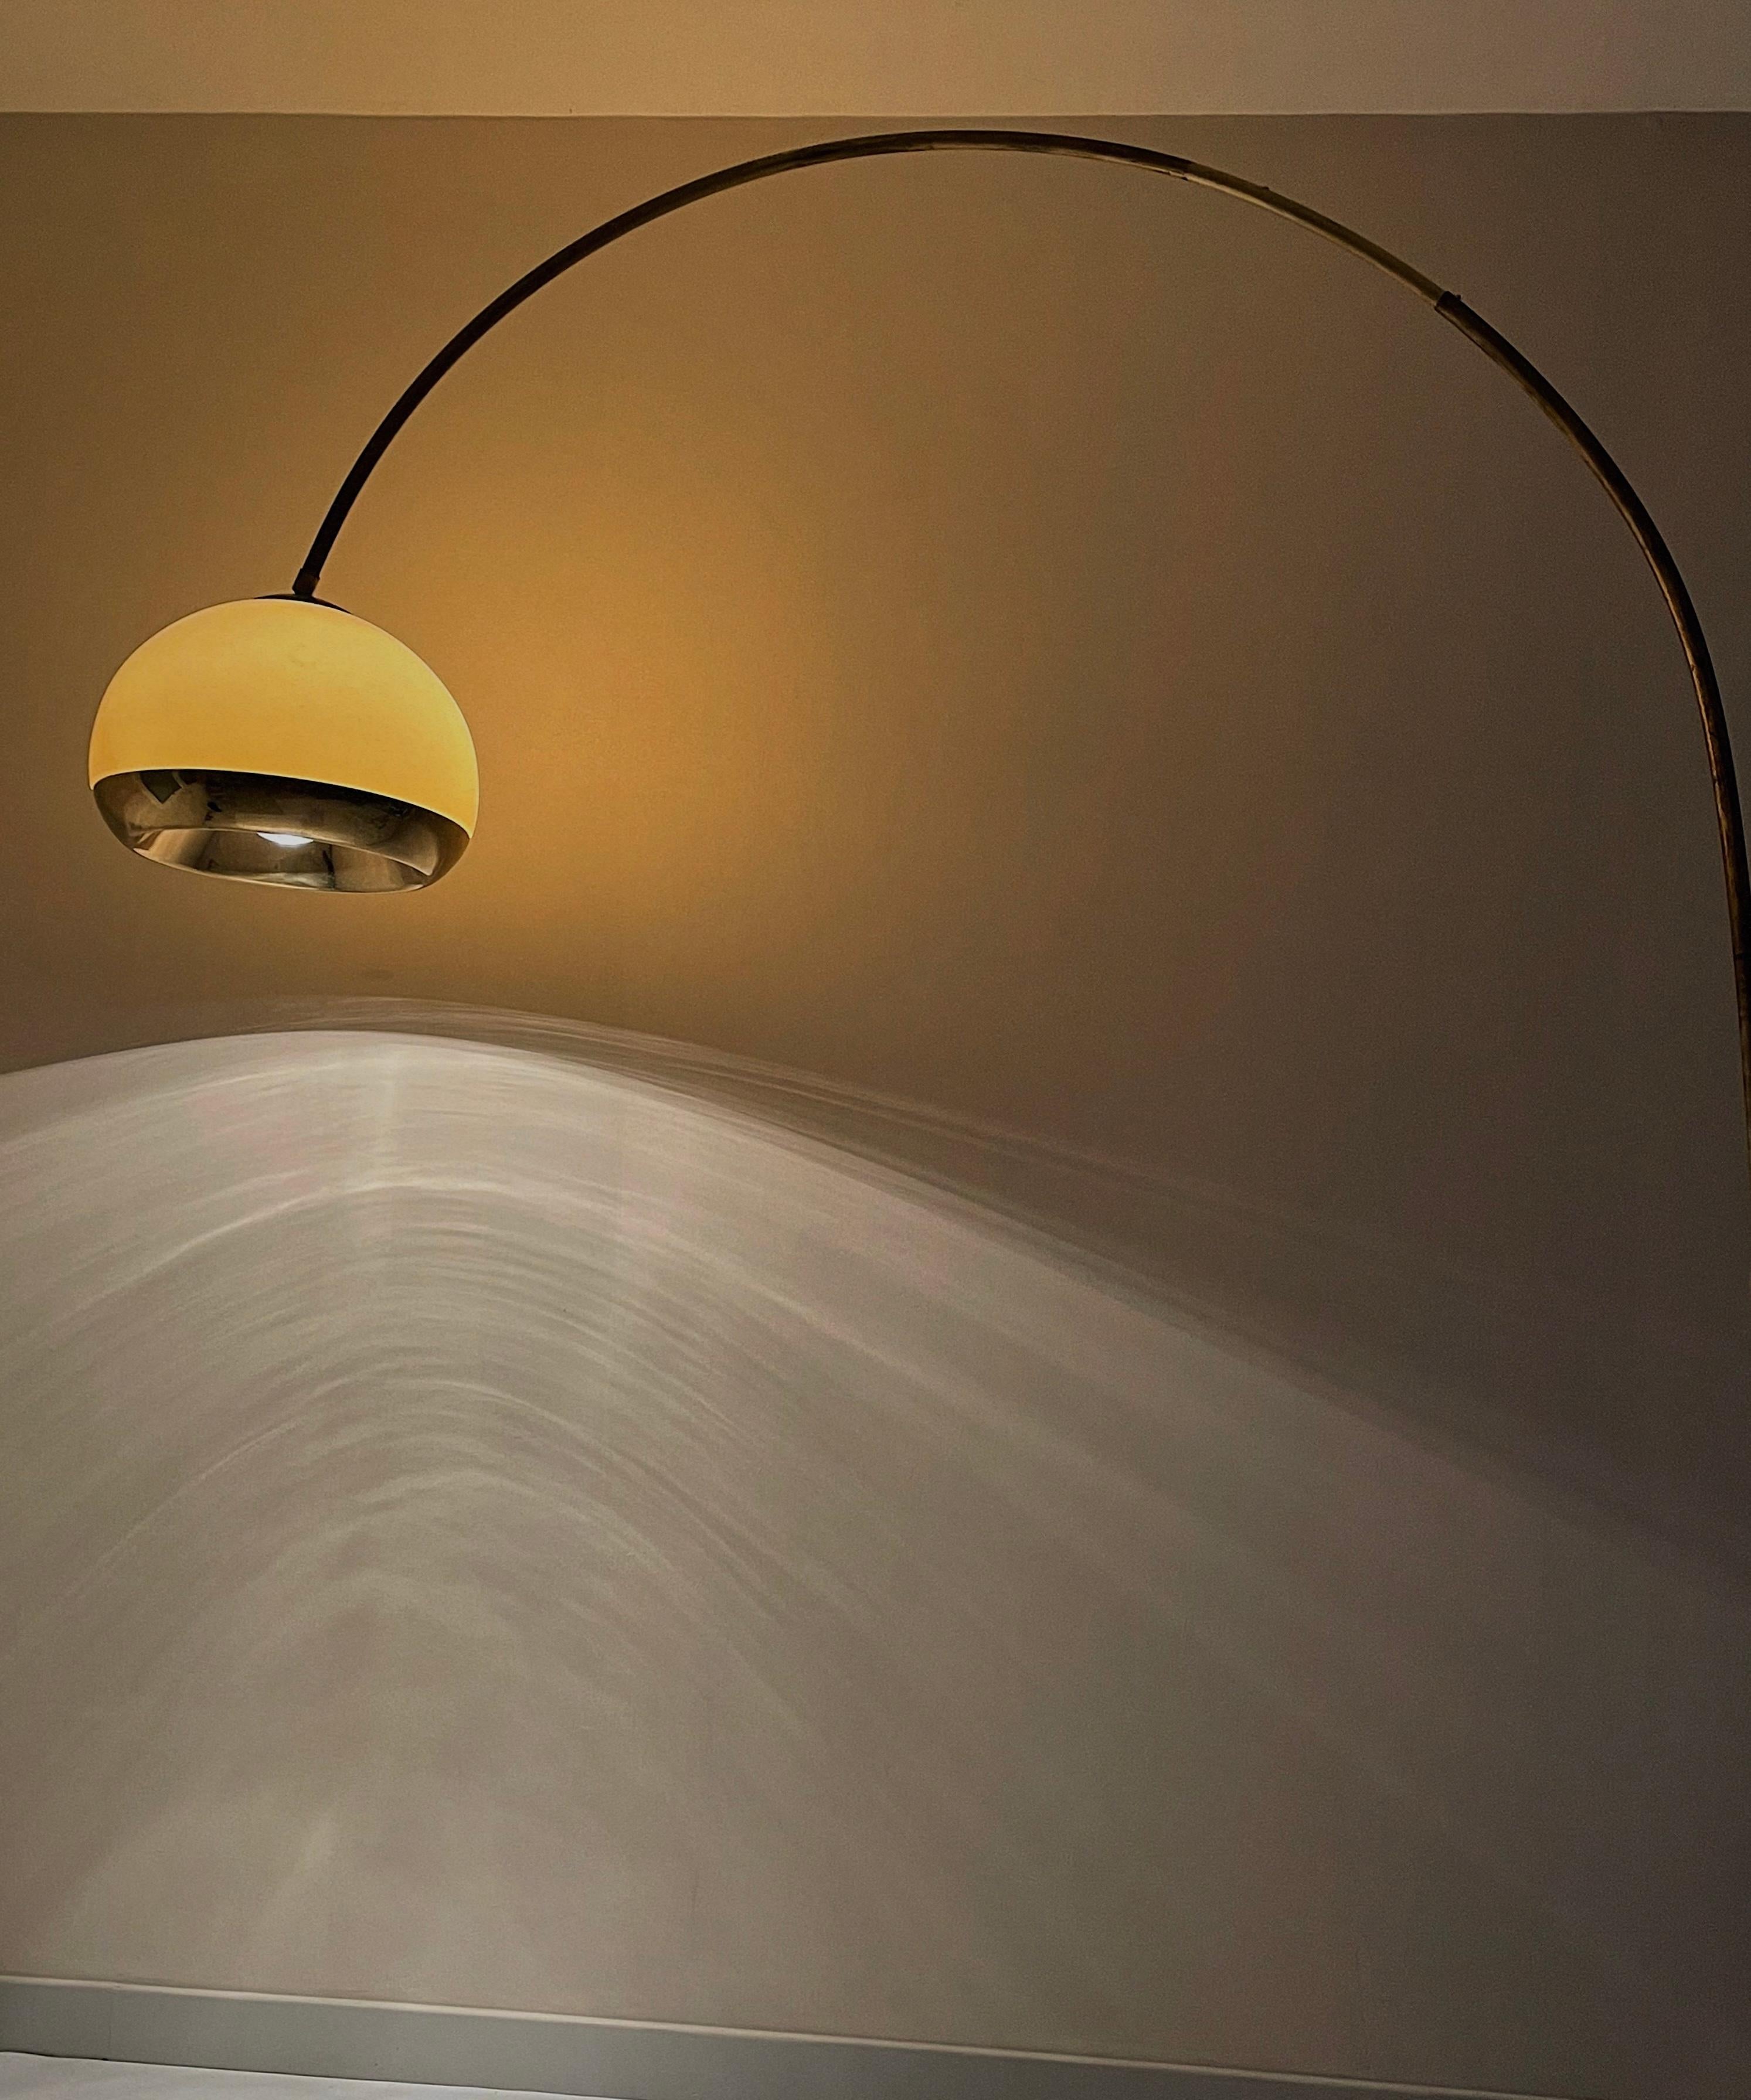 Ce grand lampadaire arc a été réalisée par Harvey Guzzini, un célèbre designer italien, dans les années 60. Il présente une base cubique en marbre BRECCIA ONICIATA, un marbre extrait en Italie, dans la province de Brescia dans la région de